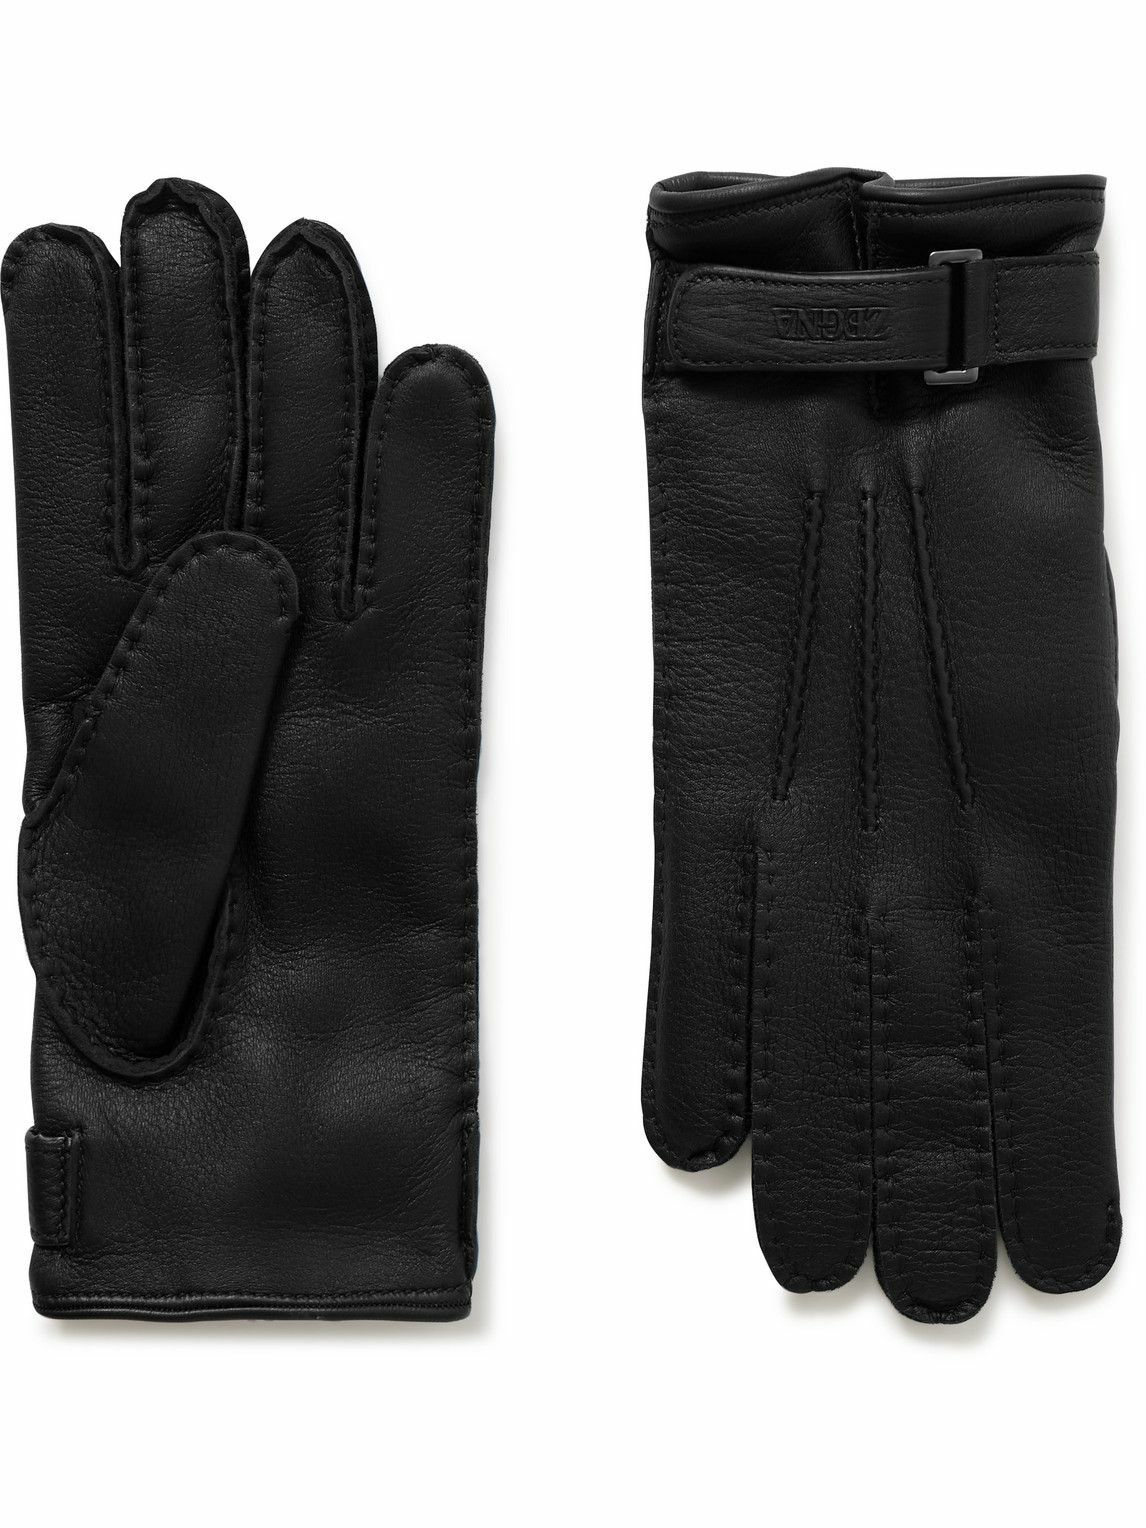 Zegna - Cashmere-Lined Leather Gloves - Black Zegna